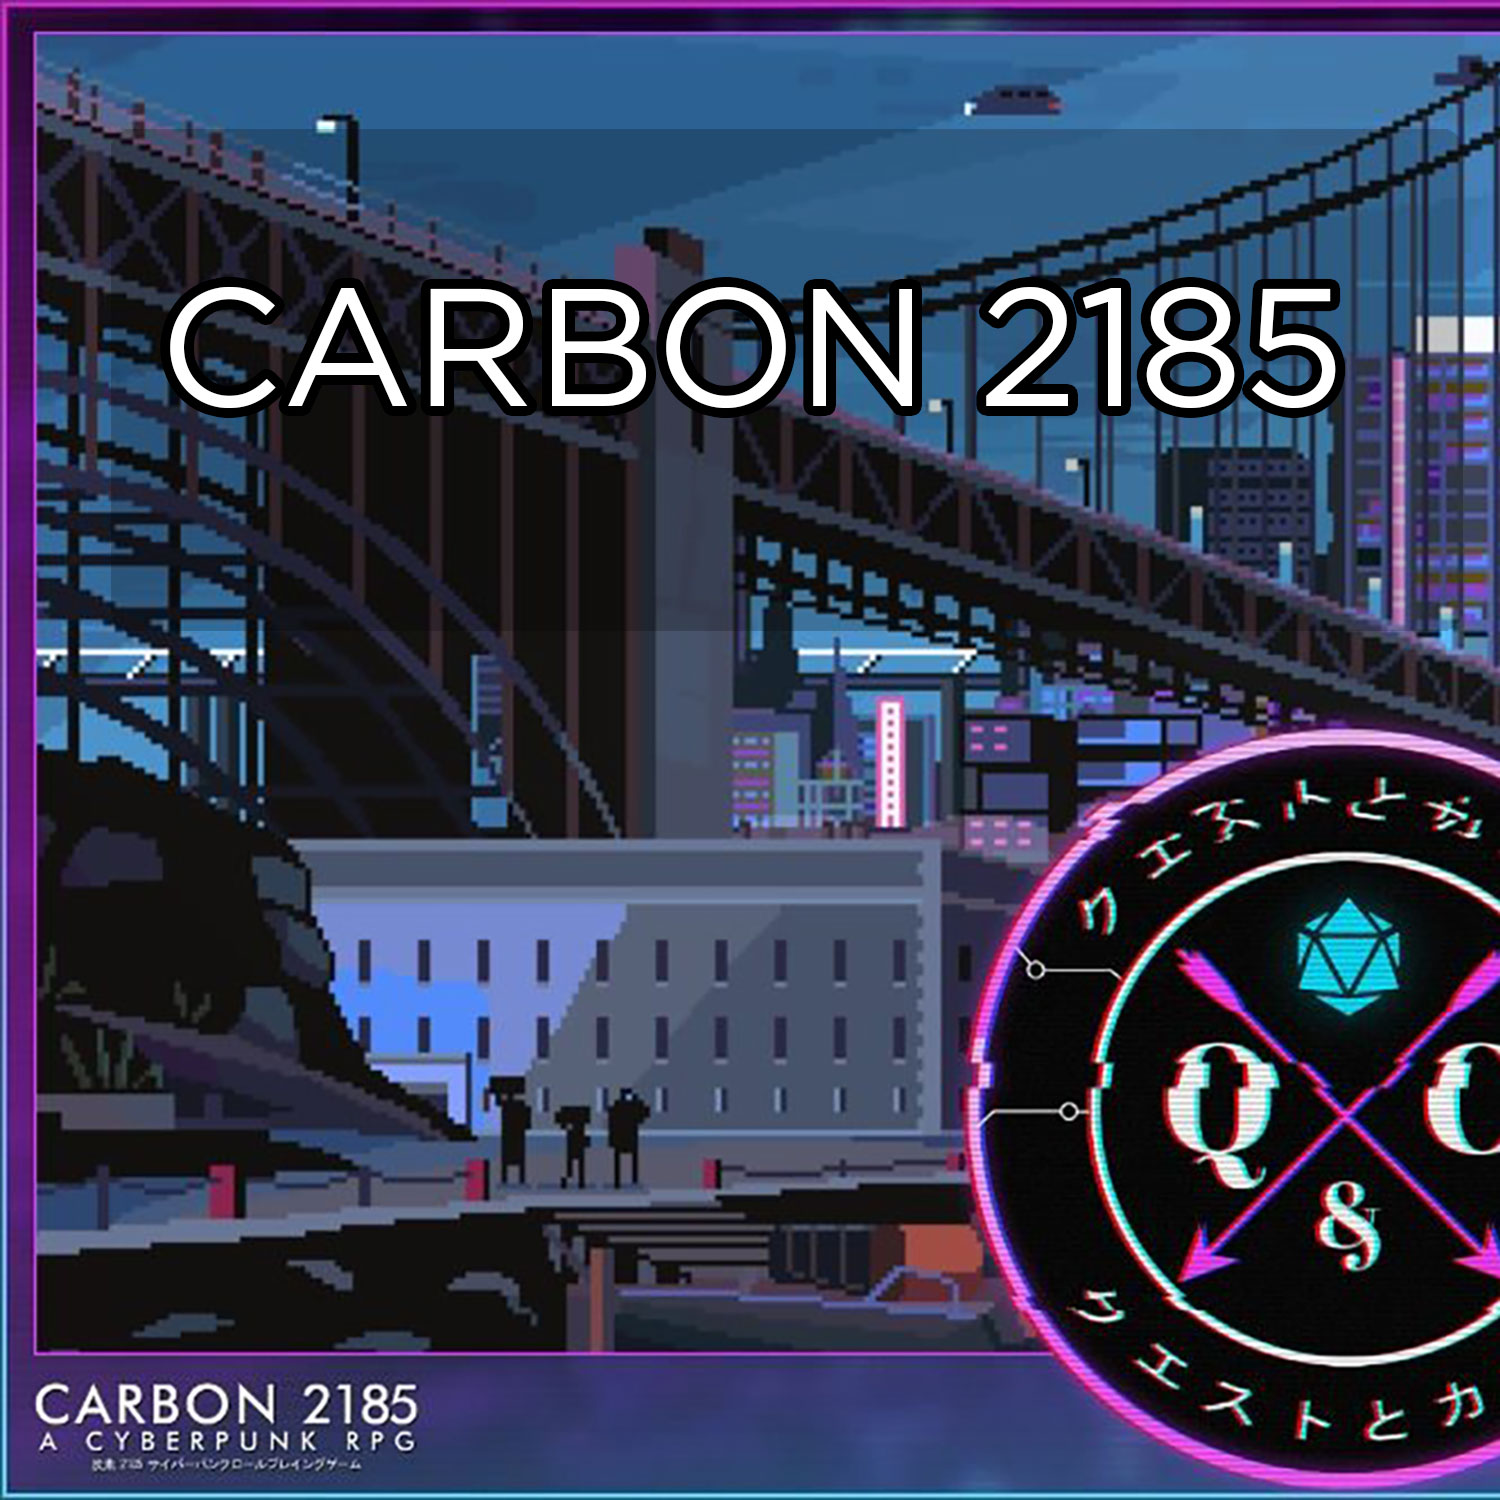 Artwork for Carbon 2185 Cyberpunk RPG